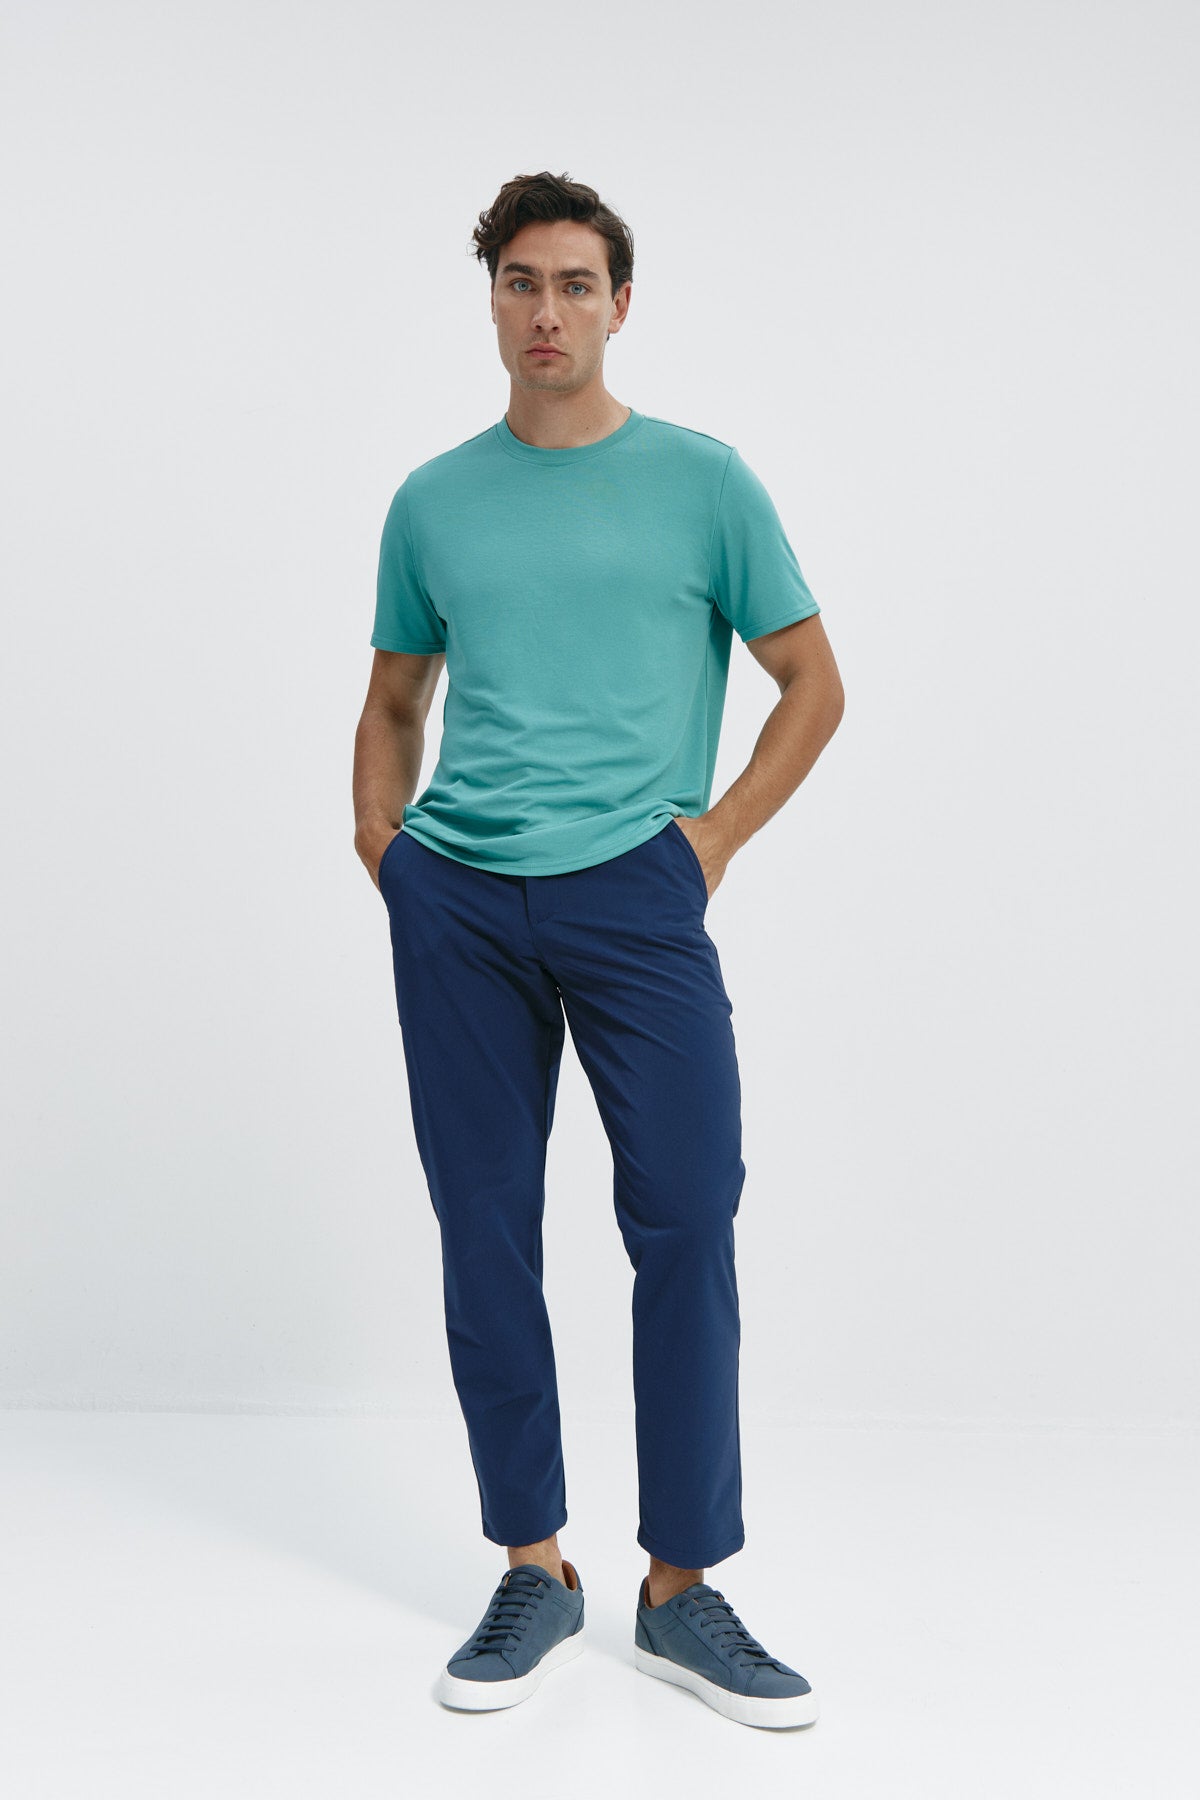 Camiseta de hombre verde clorofila de Sepiia, estilo y versatilidad en una prenda resistente. Foto cuerpo completo